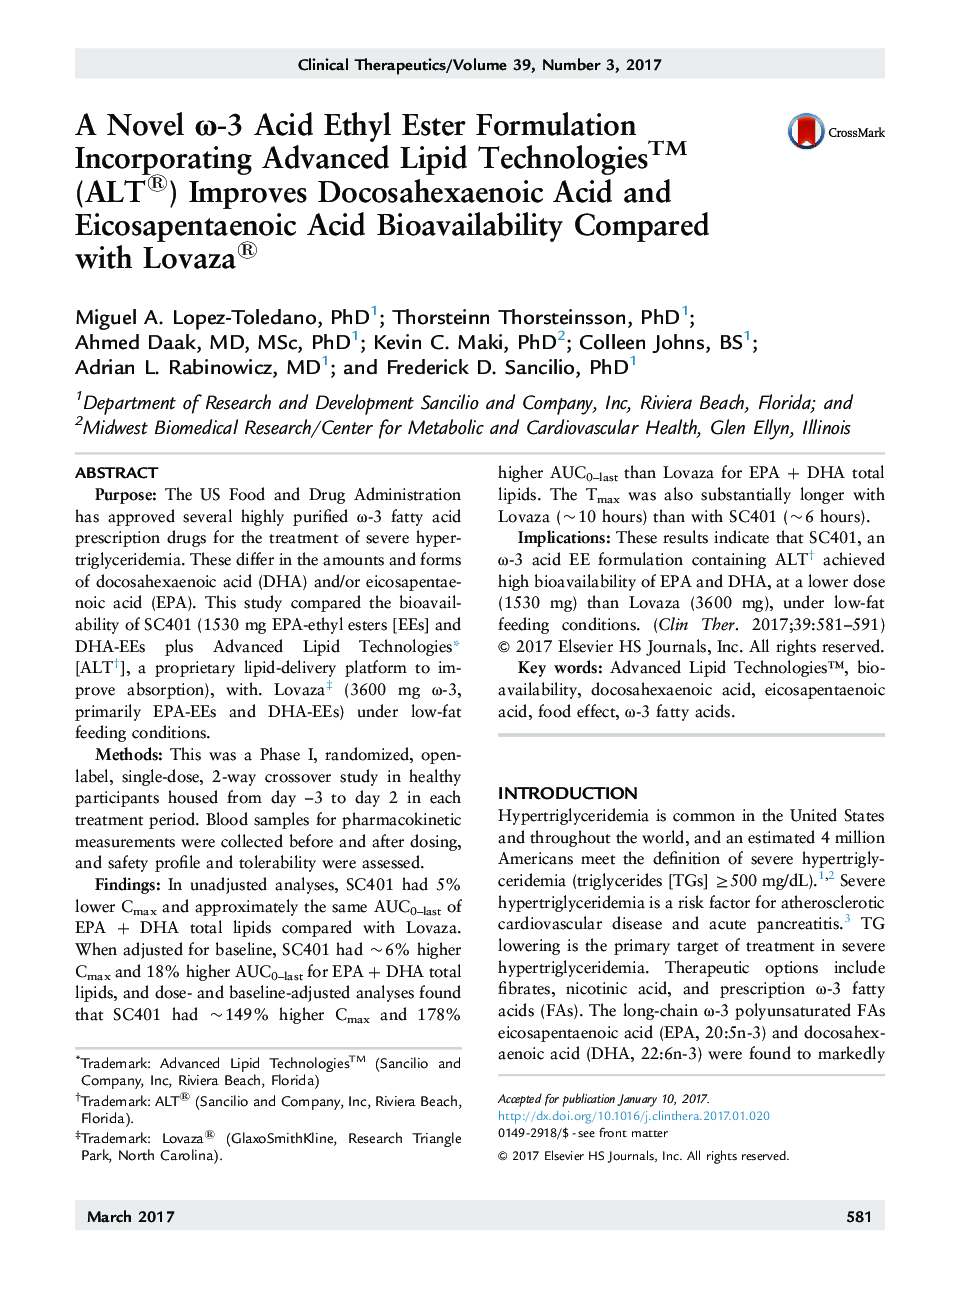 A Novel Ï-3 Acid Ethyl Ester Formulation Incorporating Advanced Lipid TechnologiesTM (ALT®) Improves Docosahexaenoic Acid and Eicosapentaenoic Acid Bioavailability Compared with Lovaza®